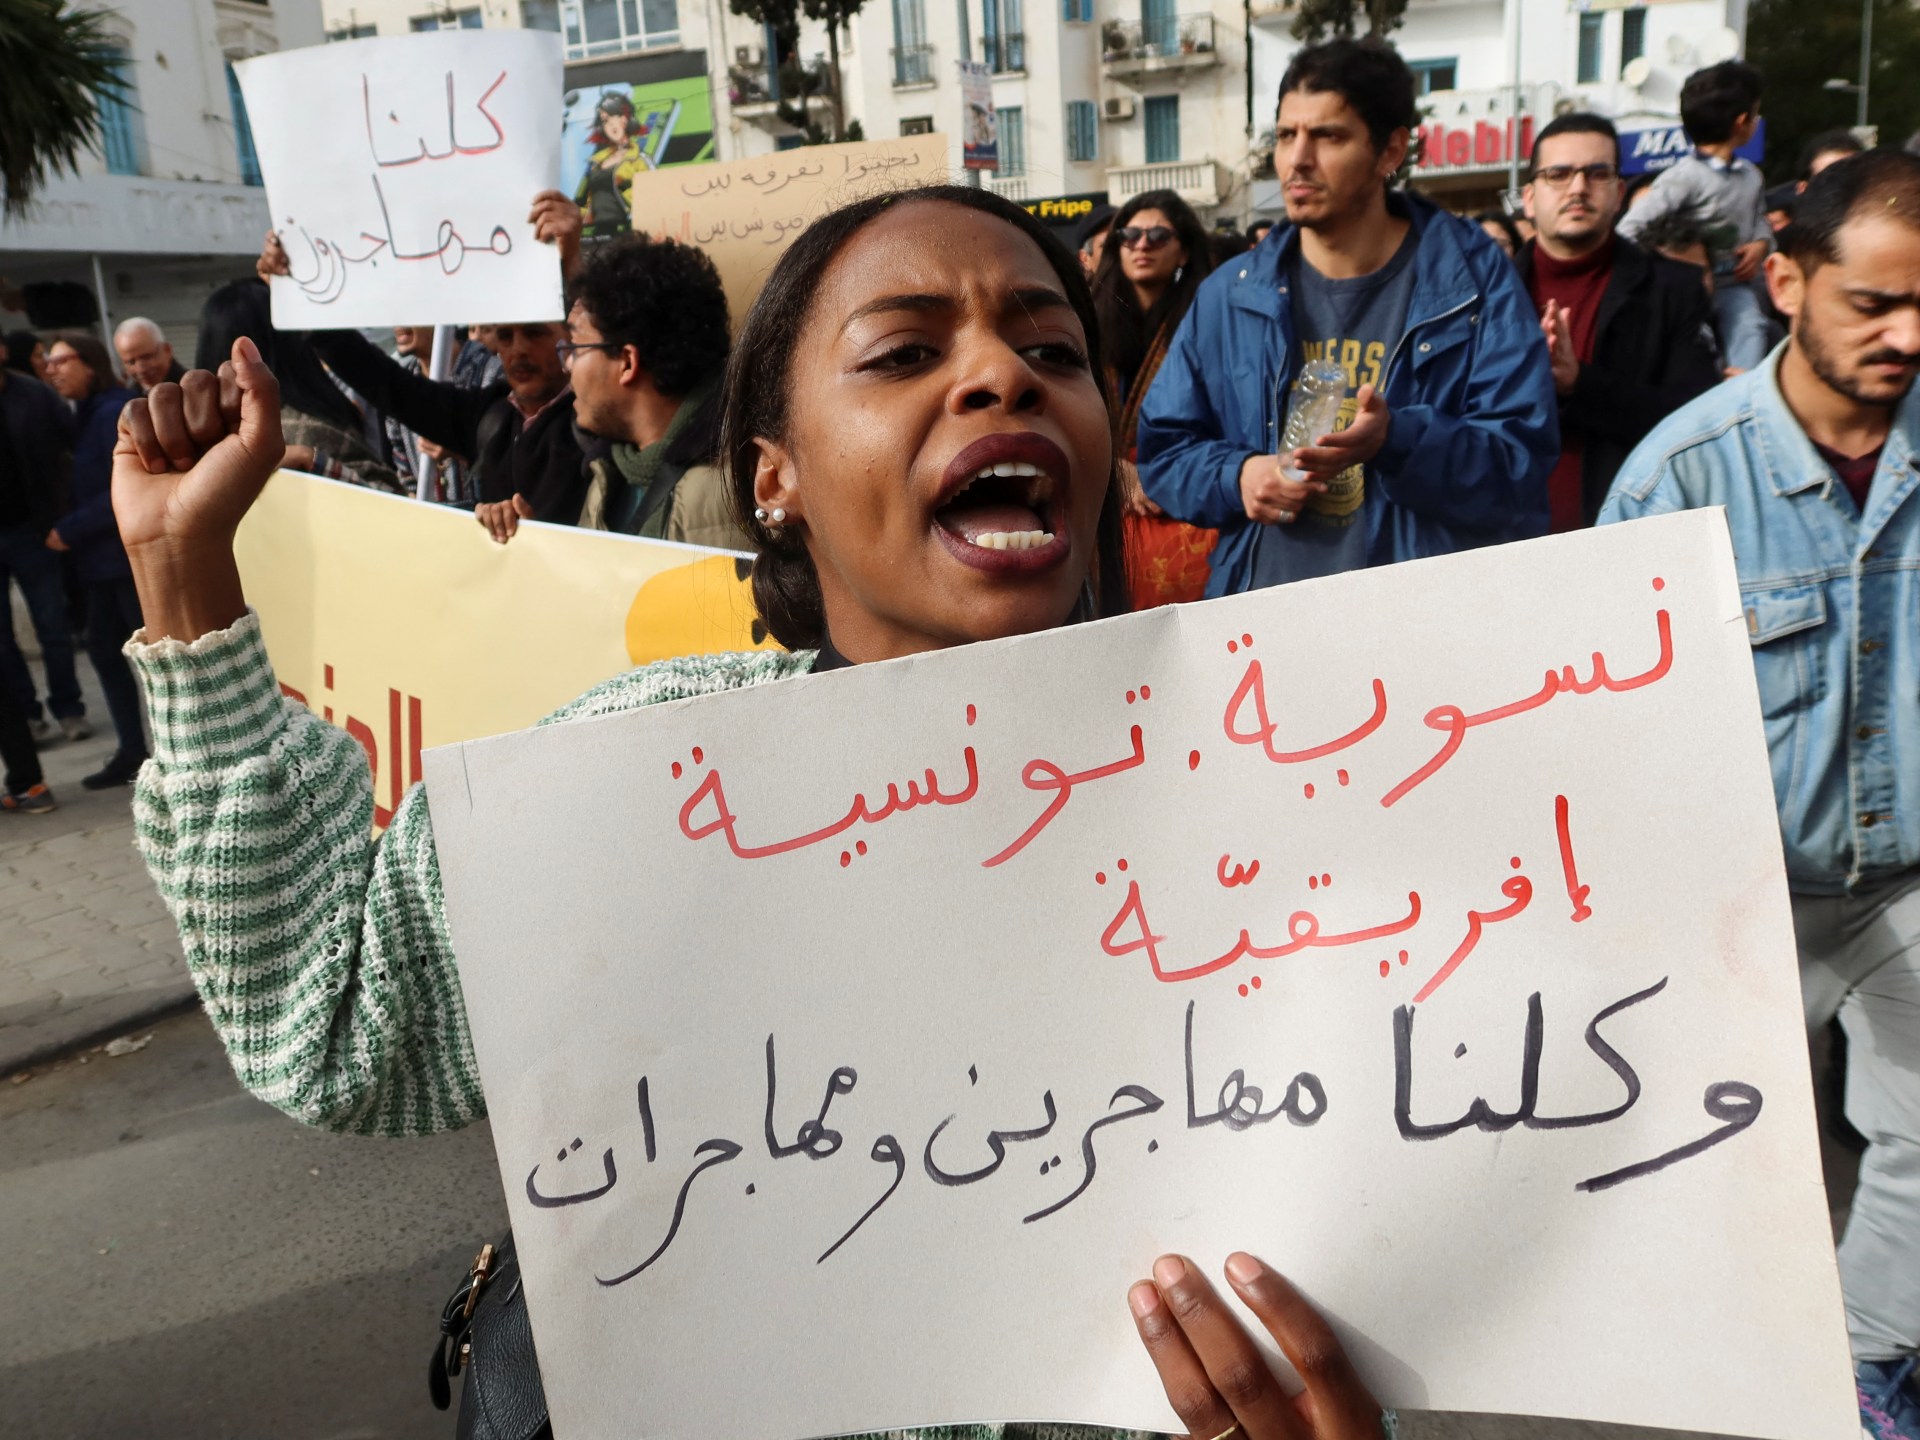 يشعر التونسيون السود بالهدوء مع تفاقم العنف ضد السود.  أخبار العنصرية